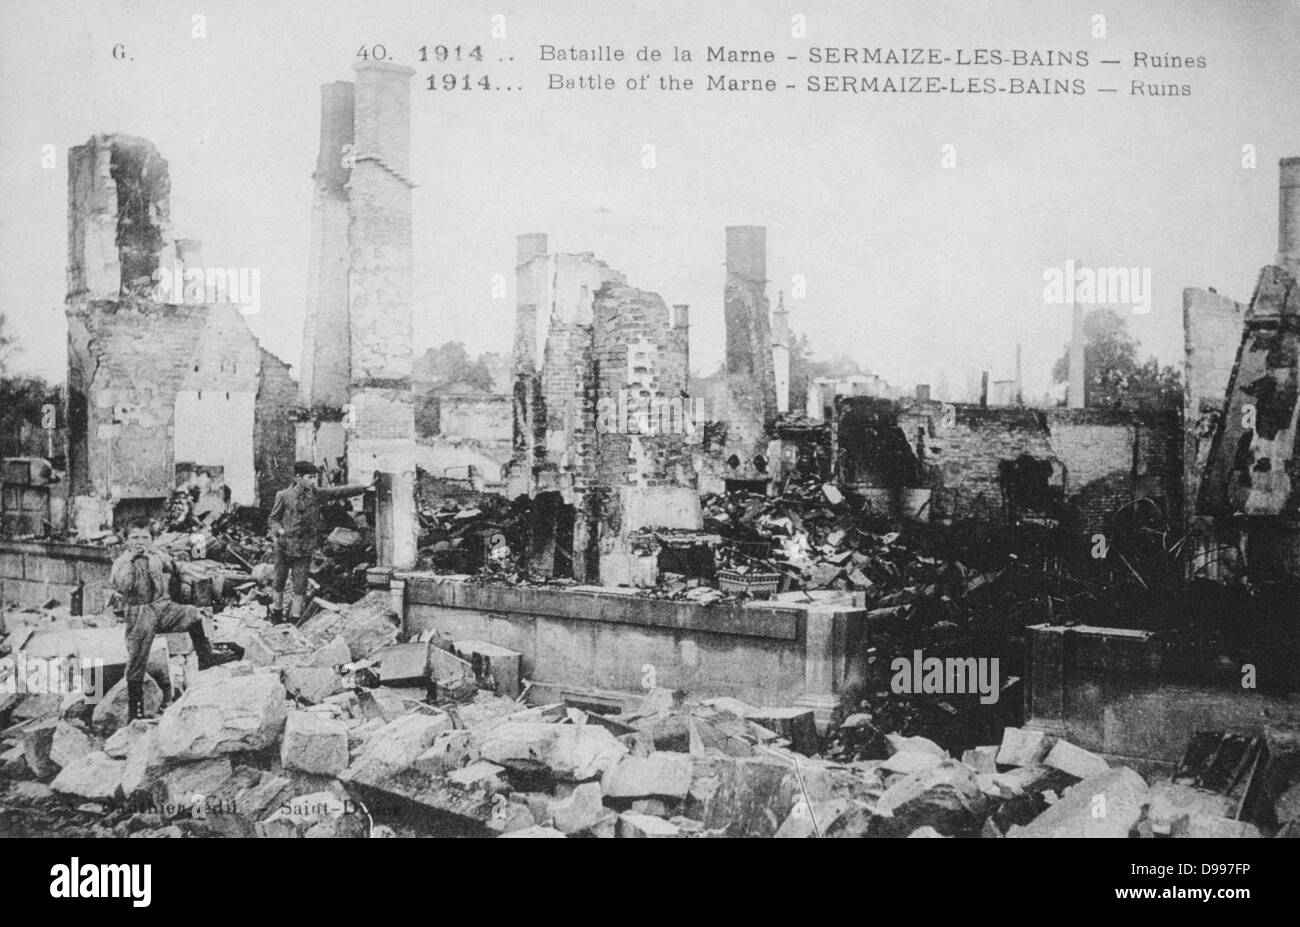 Der erste Weltkrieg 1914-1918: Nach der ersten Schlacht an der Marne, in der Nähe von Paris, Frankreich, 12. September 1914 - Ruinen von Sermaize-les-Bains. Die Schlacht war ein strategischer Sieg der Alliierten. Stockfoto